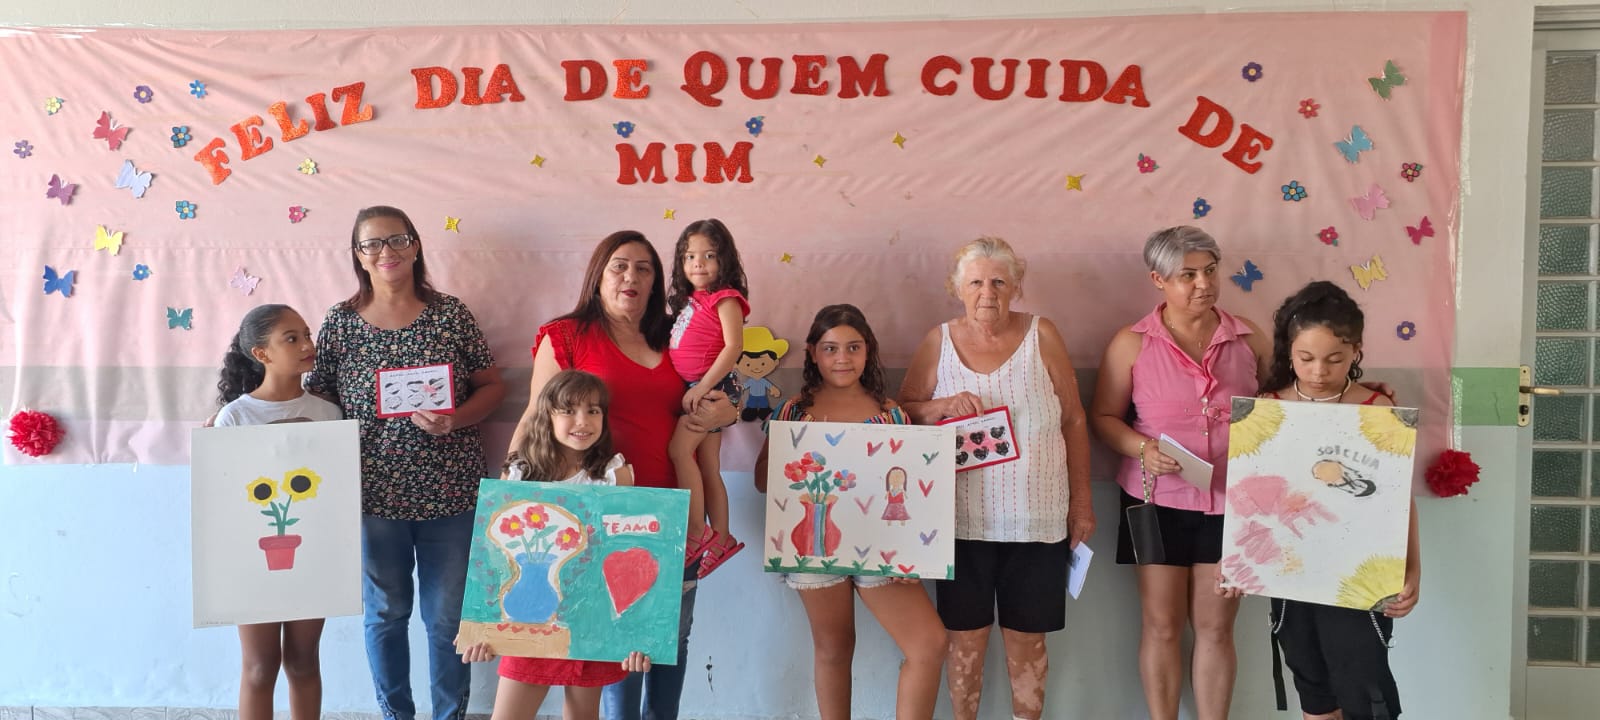 CRAS da Prefeitura de Nova Odessa celebra o Dia das Mães com homenagem especial a ‘Quem Cuida de Mim’